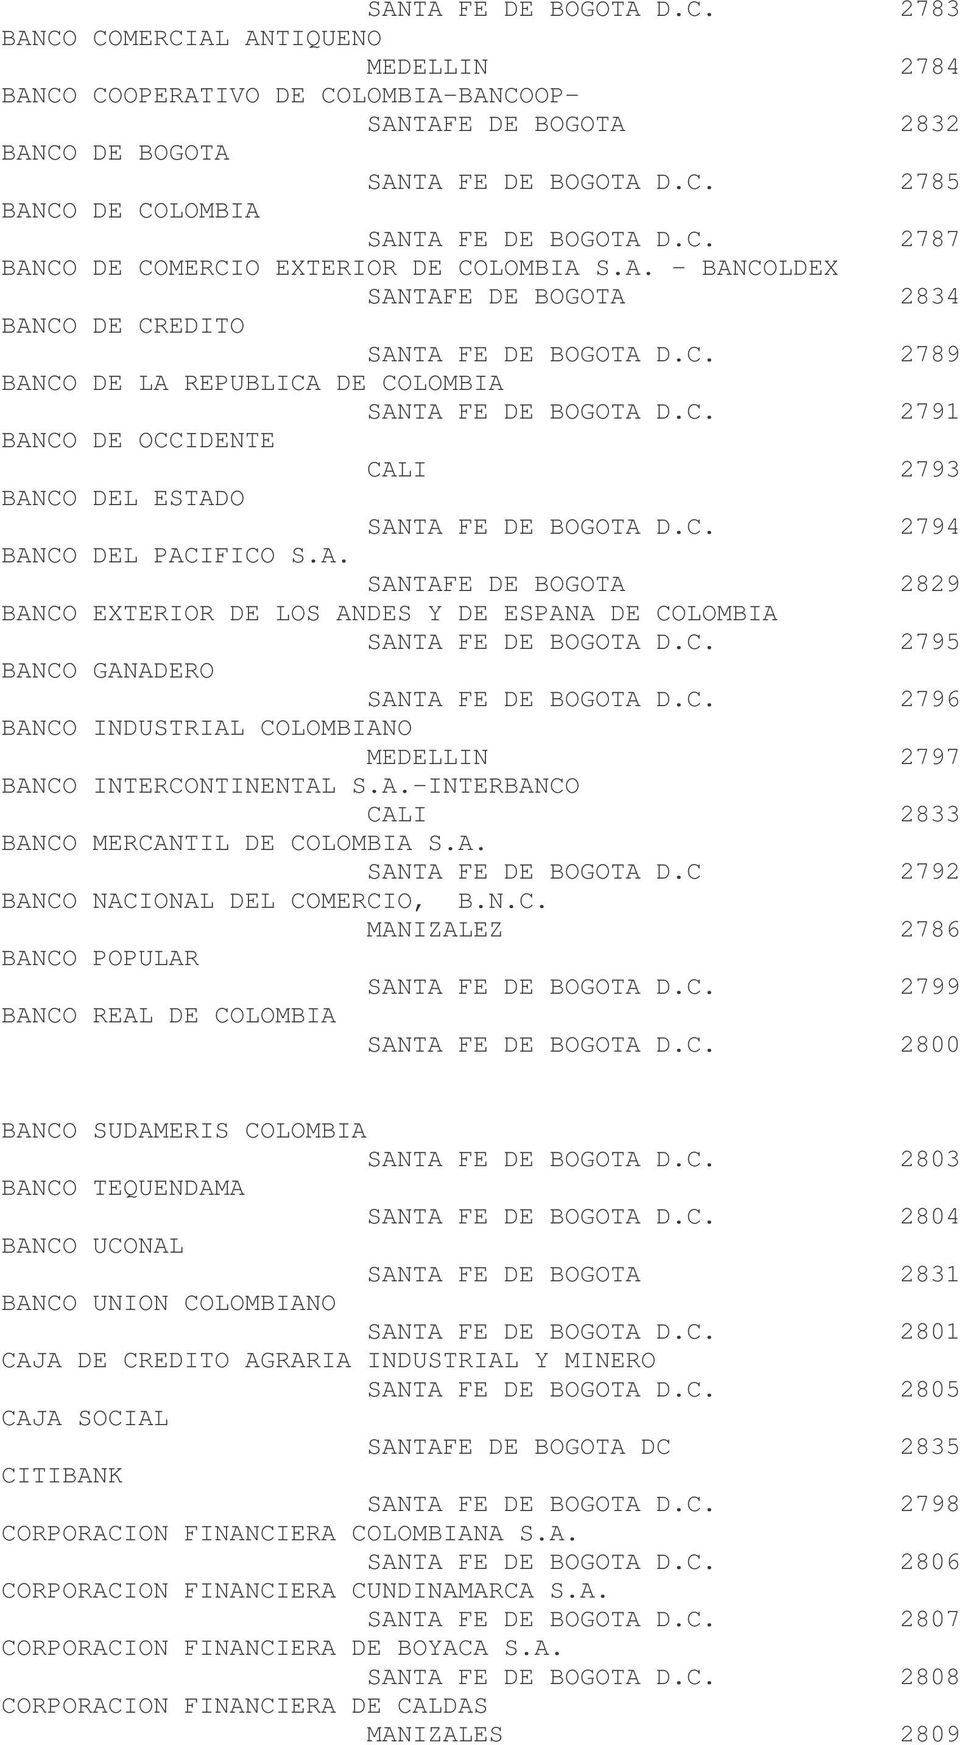 C. 2794 BANCO DEL PACIFICO S.A. SANTAFE DE BOGOTA 2829 BANCO EXTERIOR DE LOS ANDES Y DE ESPANA DE COLOMBIA SANTA FE DE BOGOTA D.C. 2795 BANCO GANADERO SANTA FE DE BOGOTA D.C. 2796 BANCO INDUSTRIAL COLOMBIANO MEDELLIN 2797 BANCO INTERCONTINENTAL S.